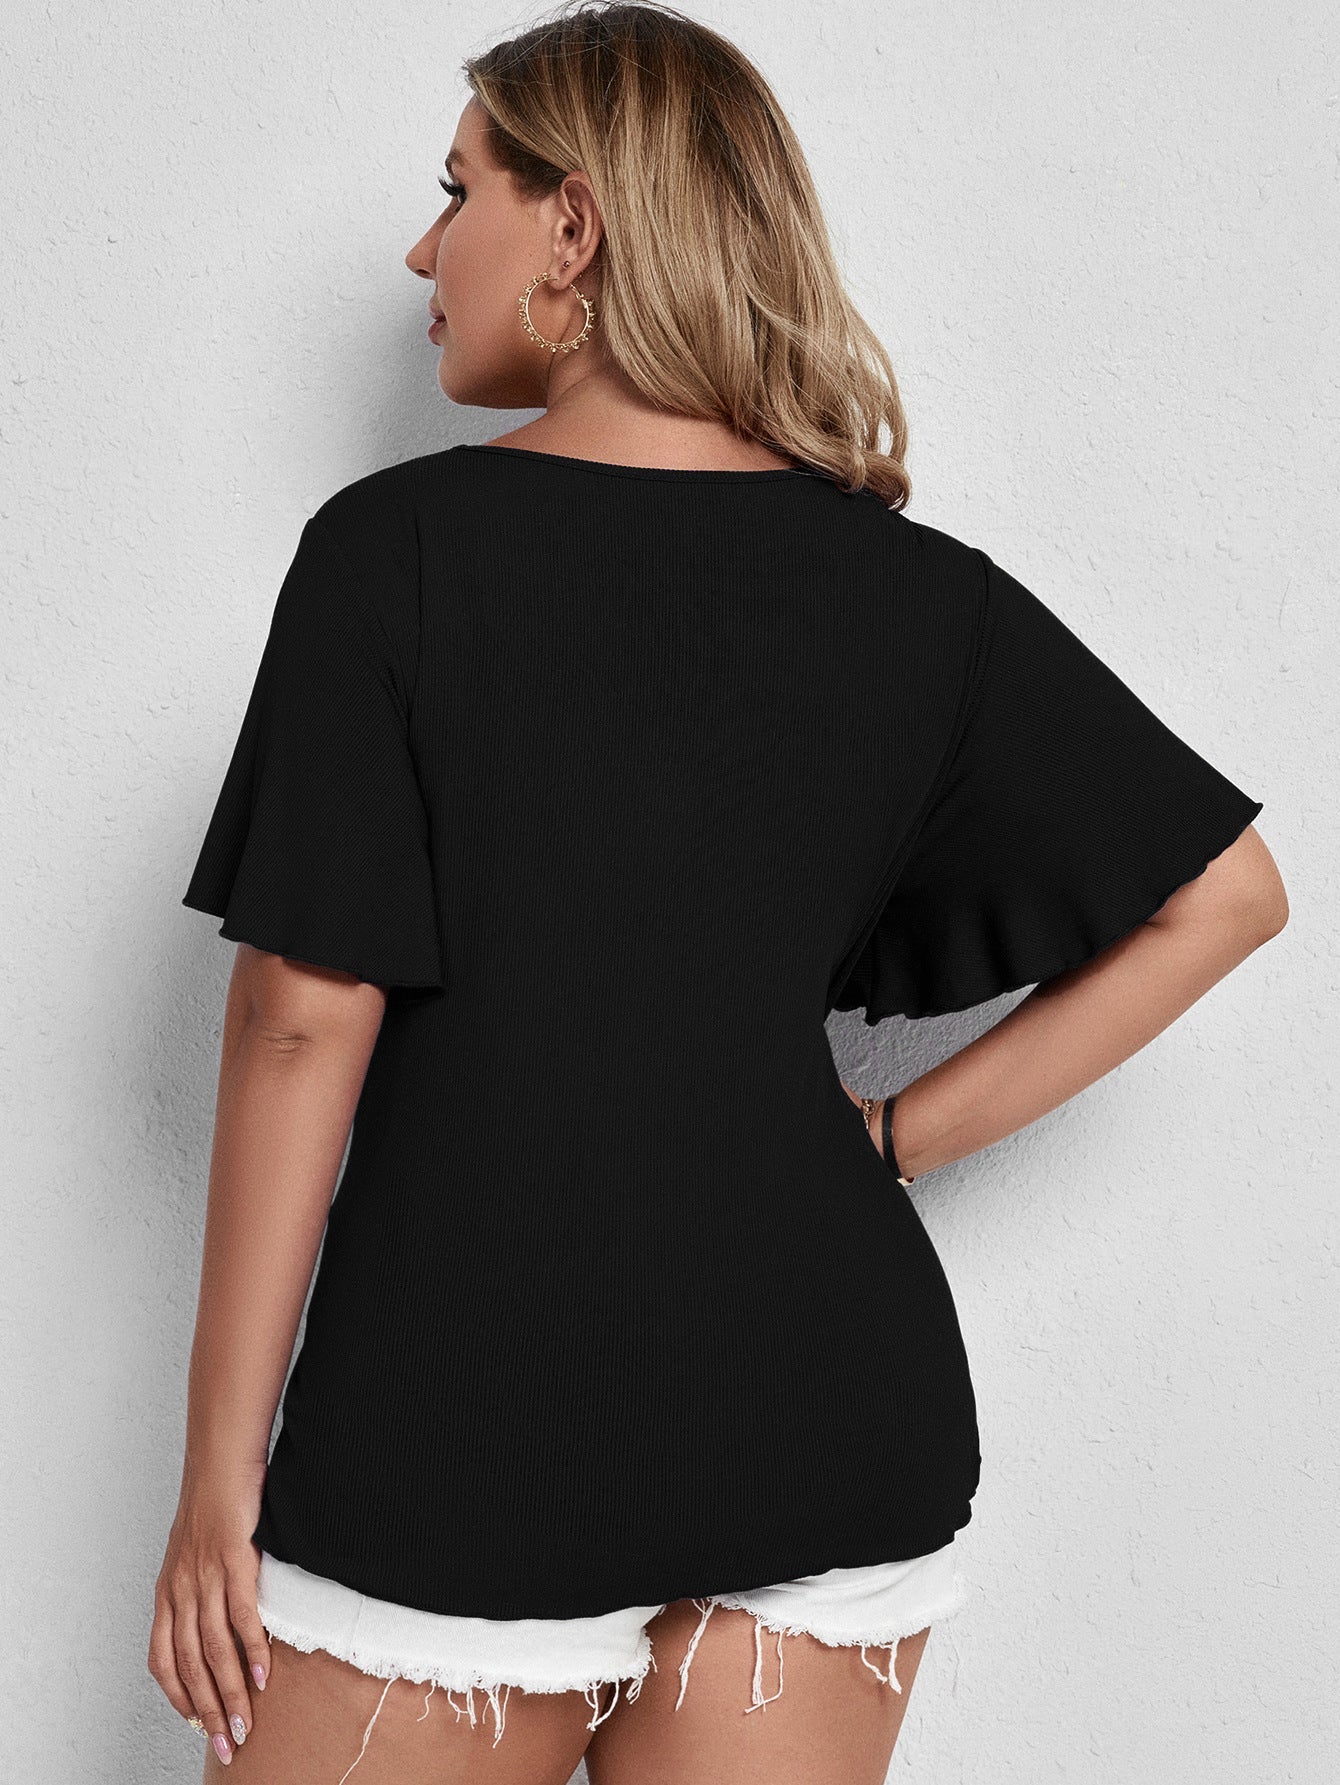 Flared Sleeve Design V-Neck Women's T-Shirt